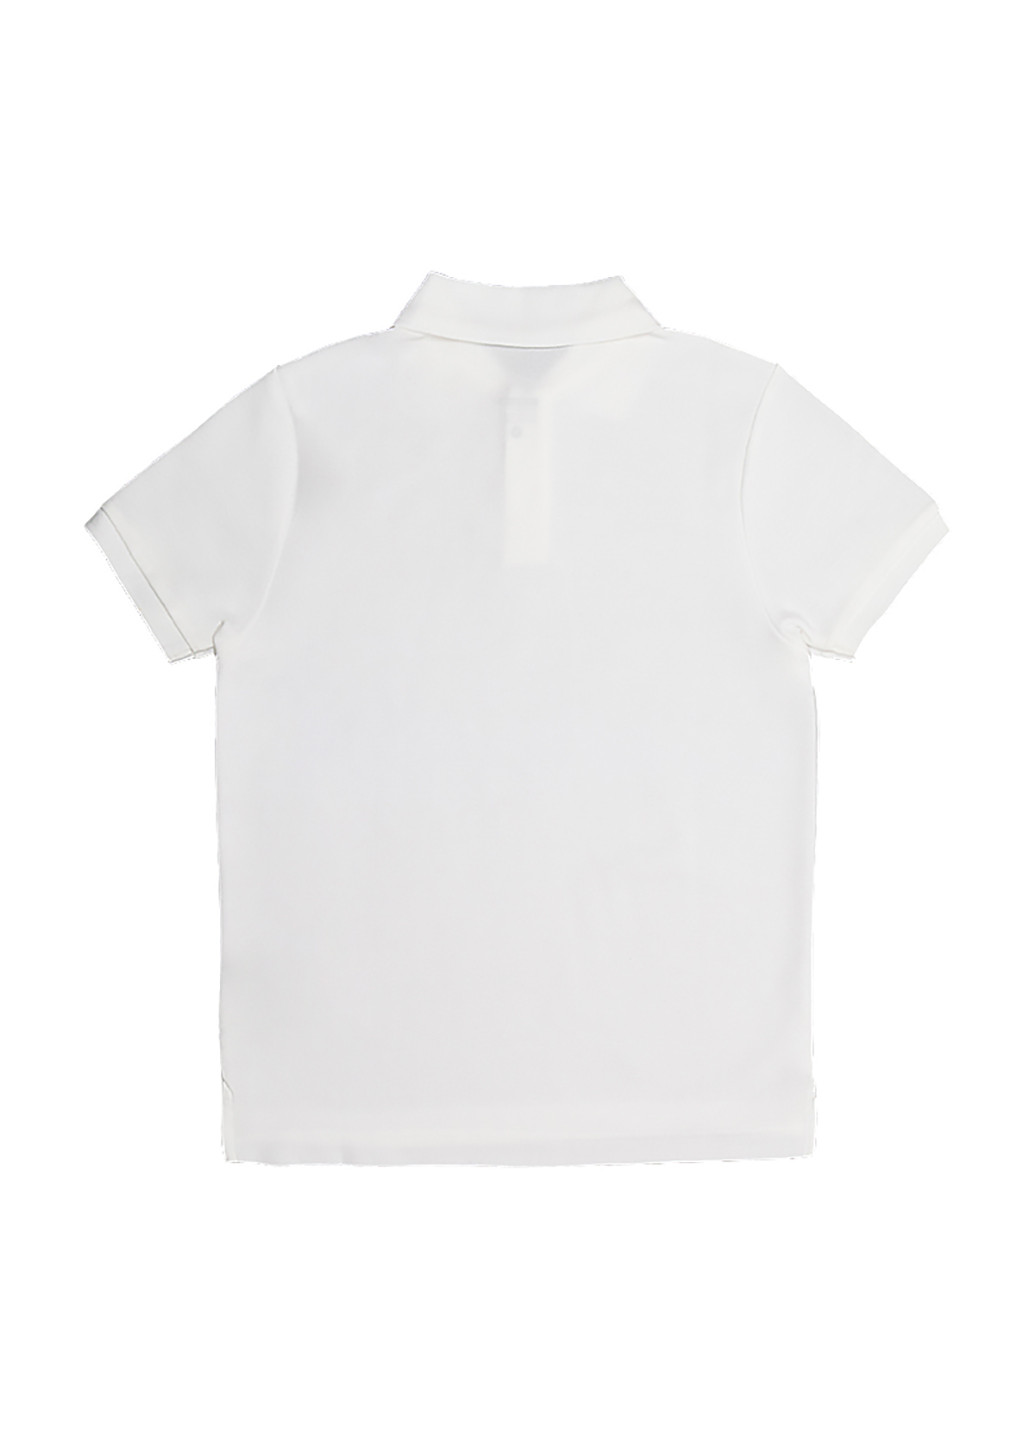 Белая детская футболка-поло для мальчика Nike